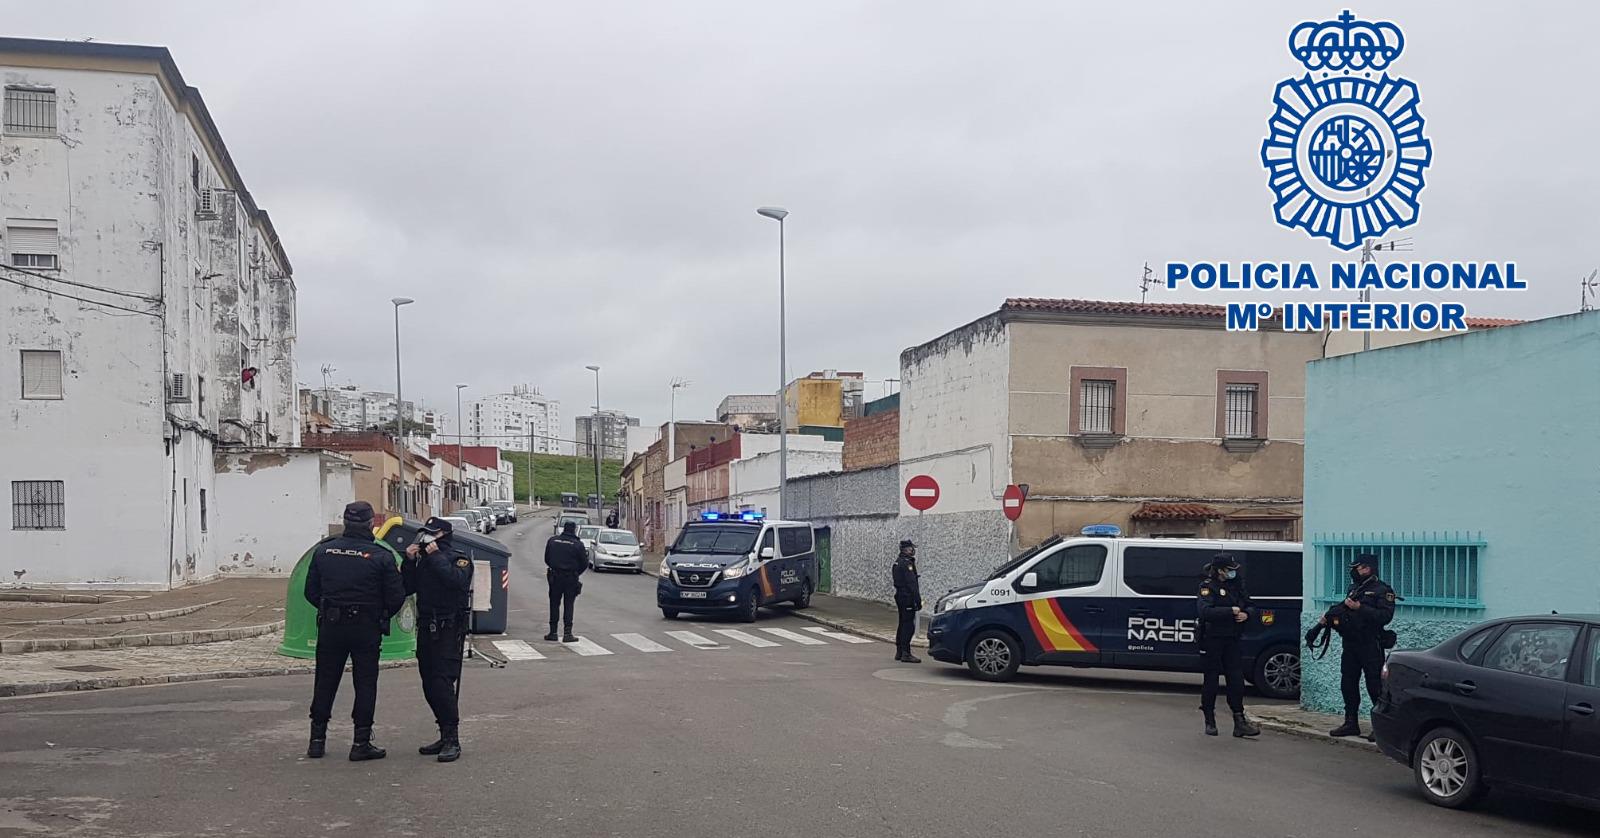 Convocada una Junta Local de Seguridad por los últimos incidentes violentos en Jerez